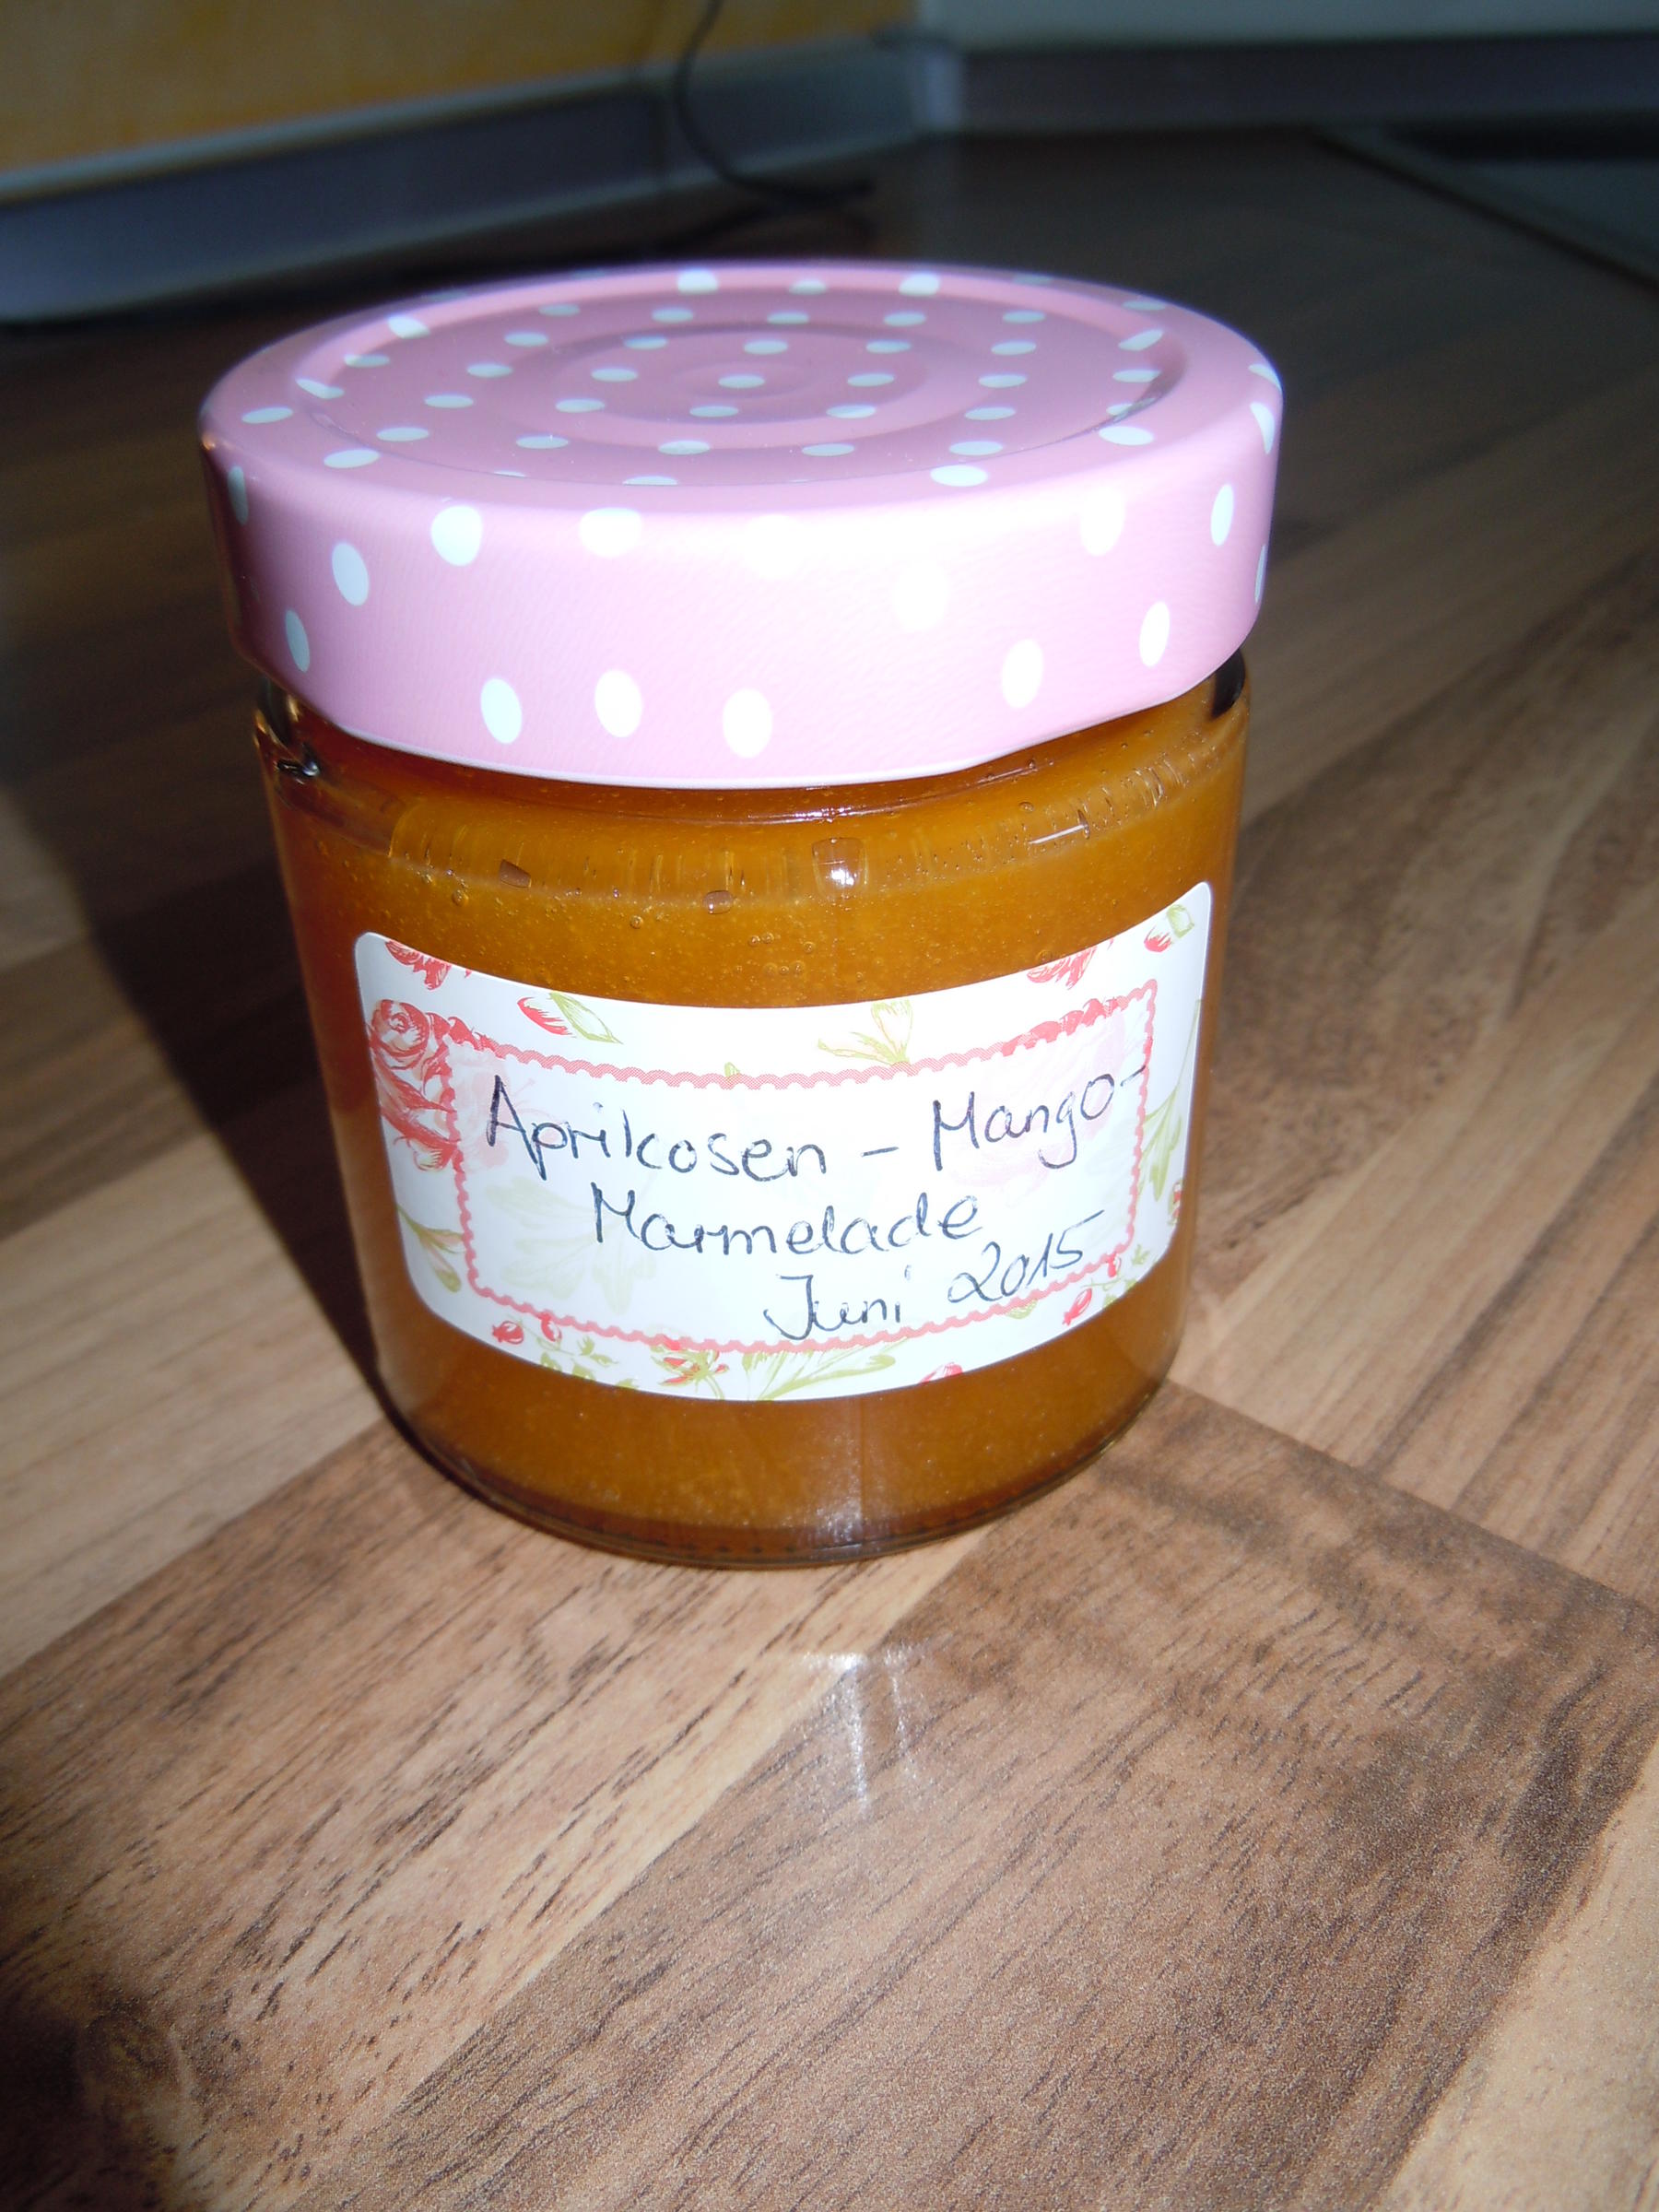 Aprikosen-Mango-Marmelade - Rezept By Alexusis